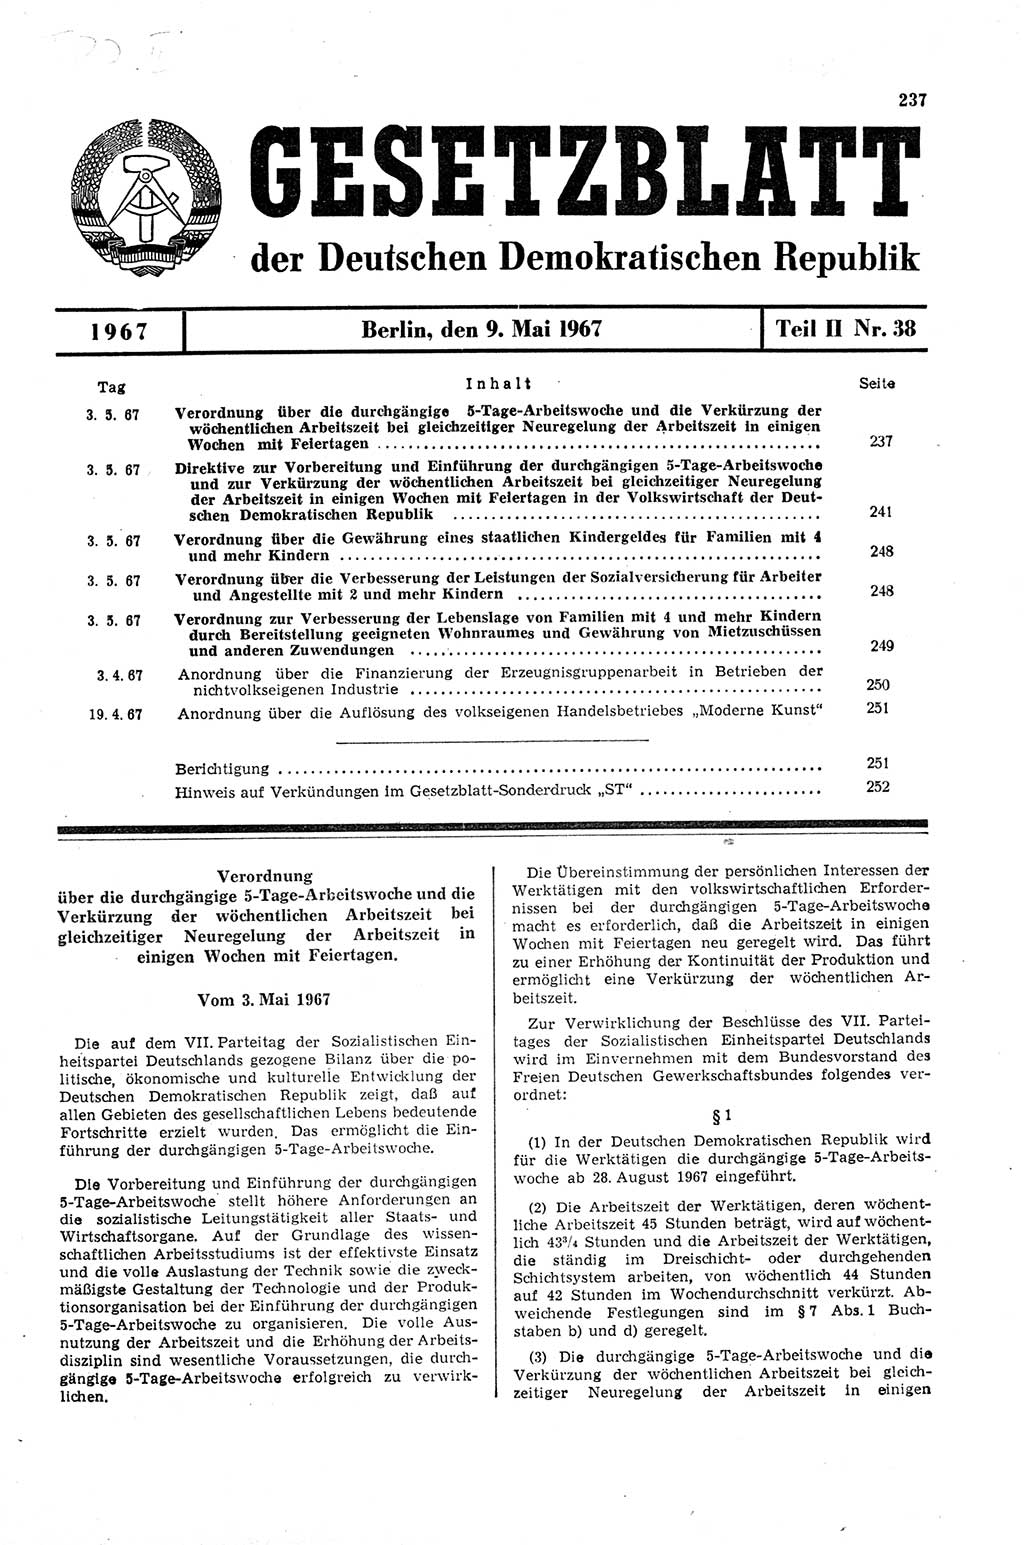 Gesetzblatt (GBl.) der Deutschen Demokratischen Republik (DDR) Teil ⅠⅠ 1967, Seite 237 (GBl. DDR ⅠⅠ 1967, S. 237)